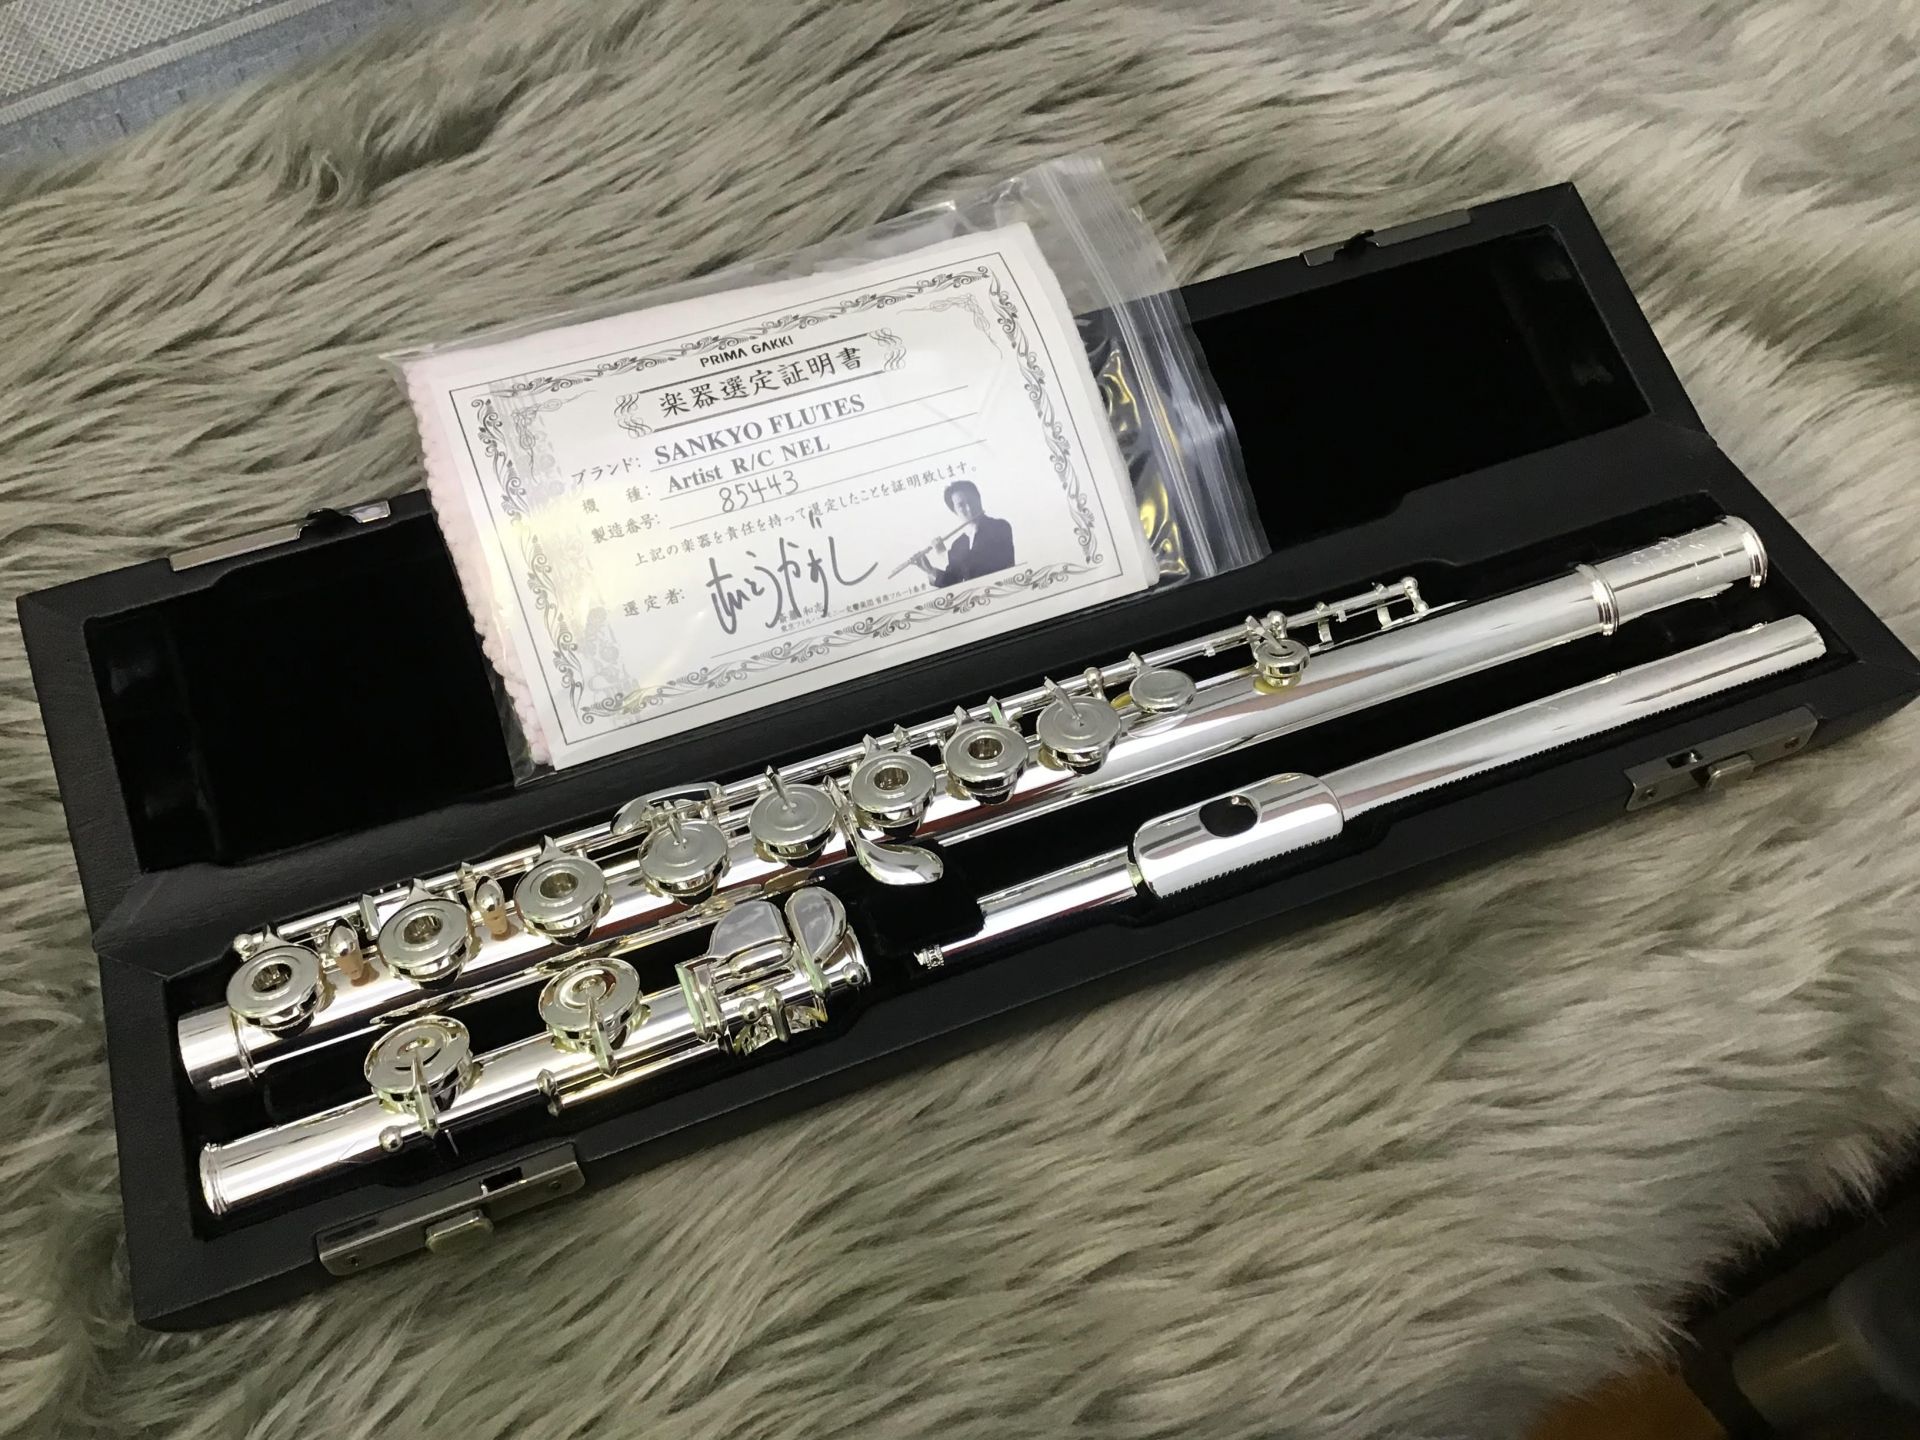 *東京フィルハーモニー交響楽団 首席フルート奏者　斎藤和志先生による選定品です！！ 入念なつくりによる、しっかりした音程。澄み切った透明感のある音色。]]アーティストの名に相応しく、国内外のプレイヤーに愛され評価されている、まさに三響の音を代表する総銀製の名器です。 店頭では実際にお試しいただけます […]